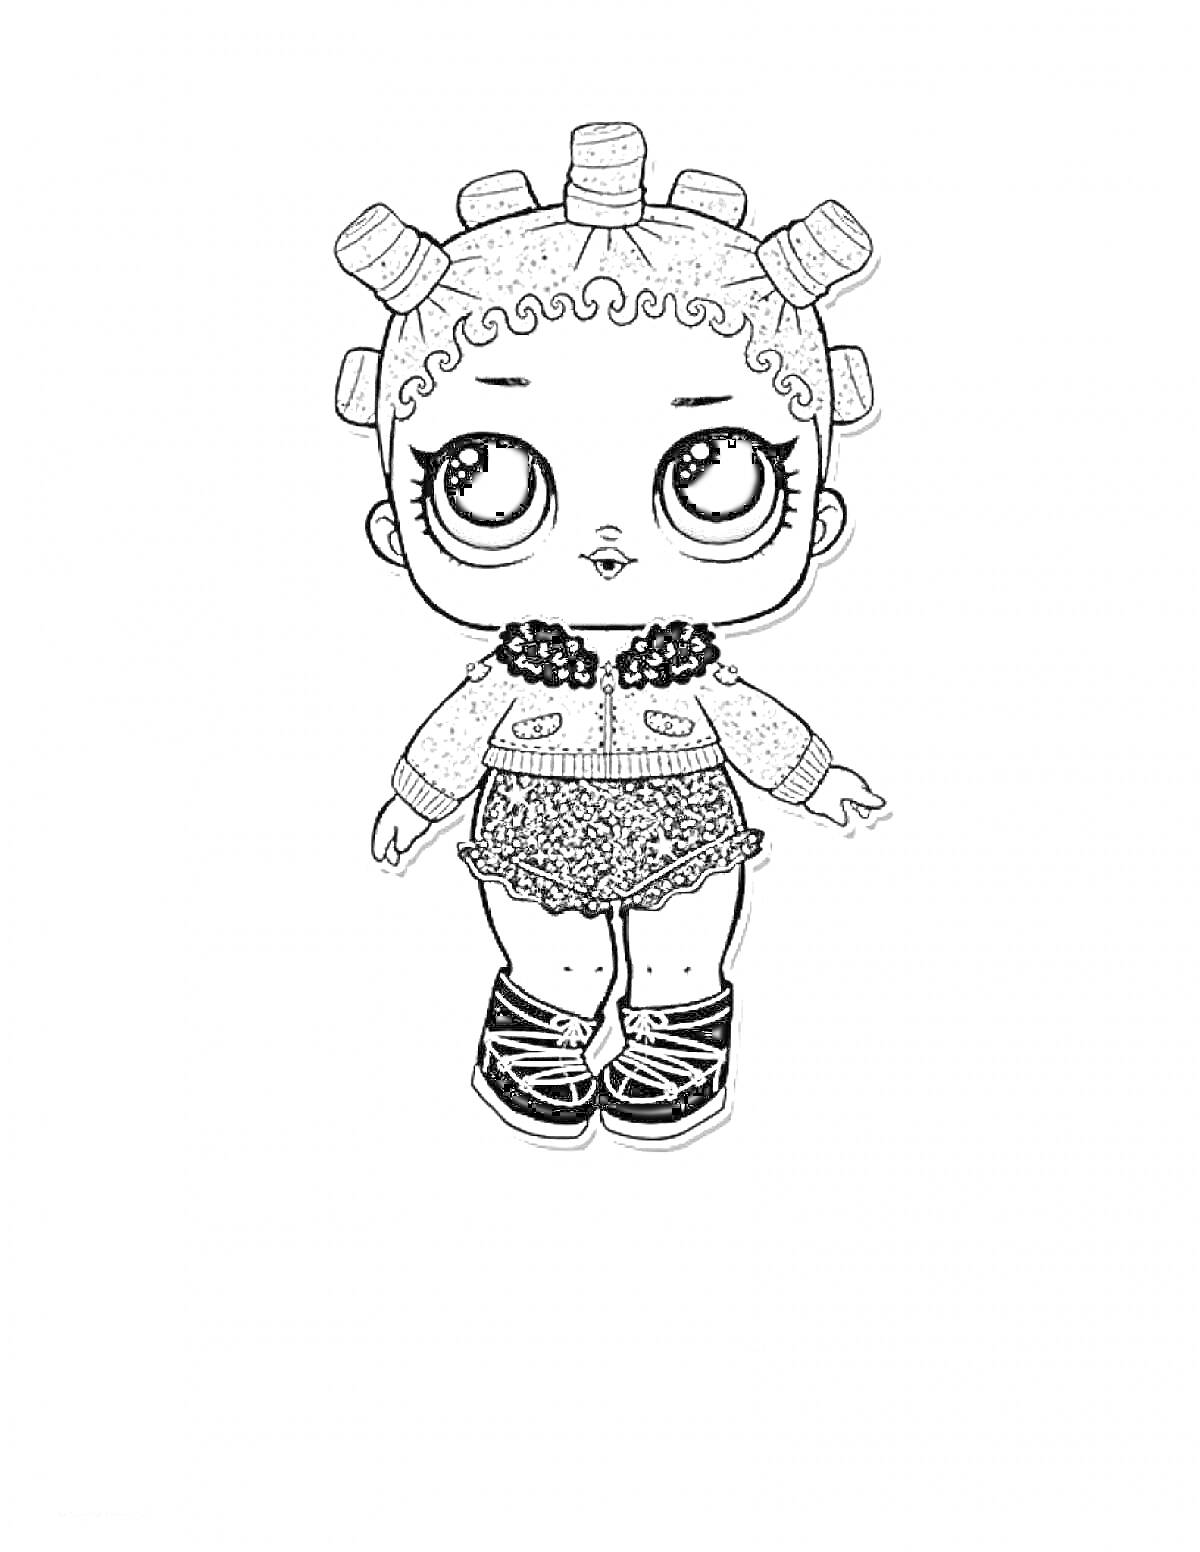 Девочка Лол с большими глазами, кудрявыми волосами и бигуди на голове, в кофточке, юбке и ботинках